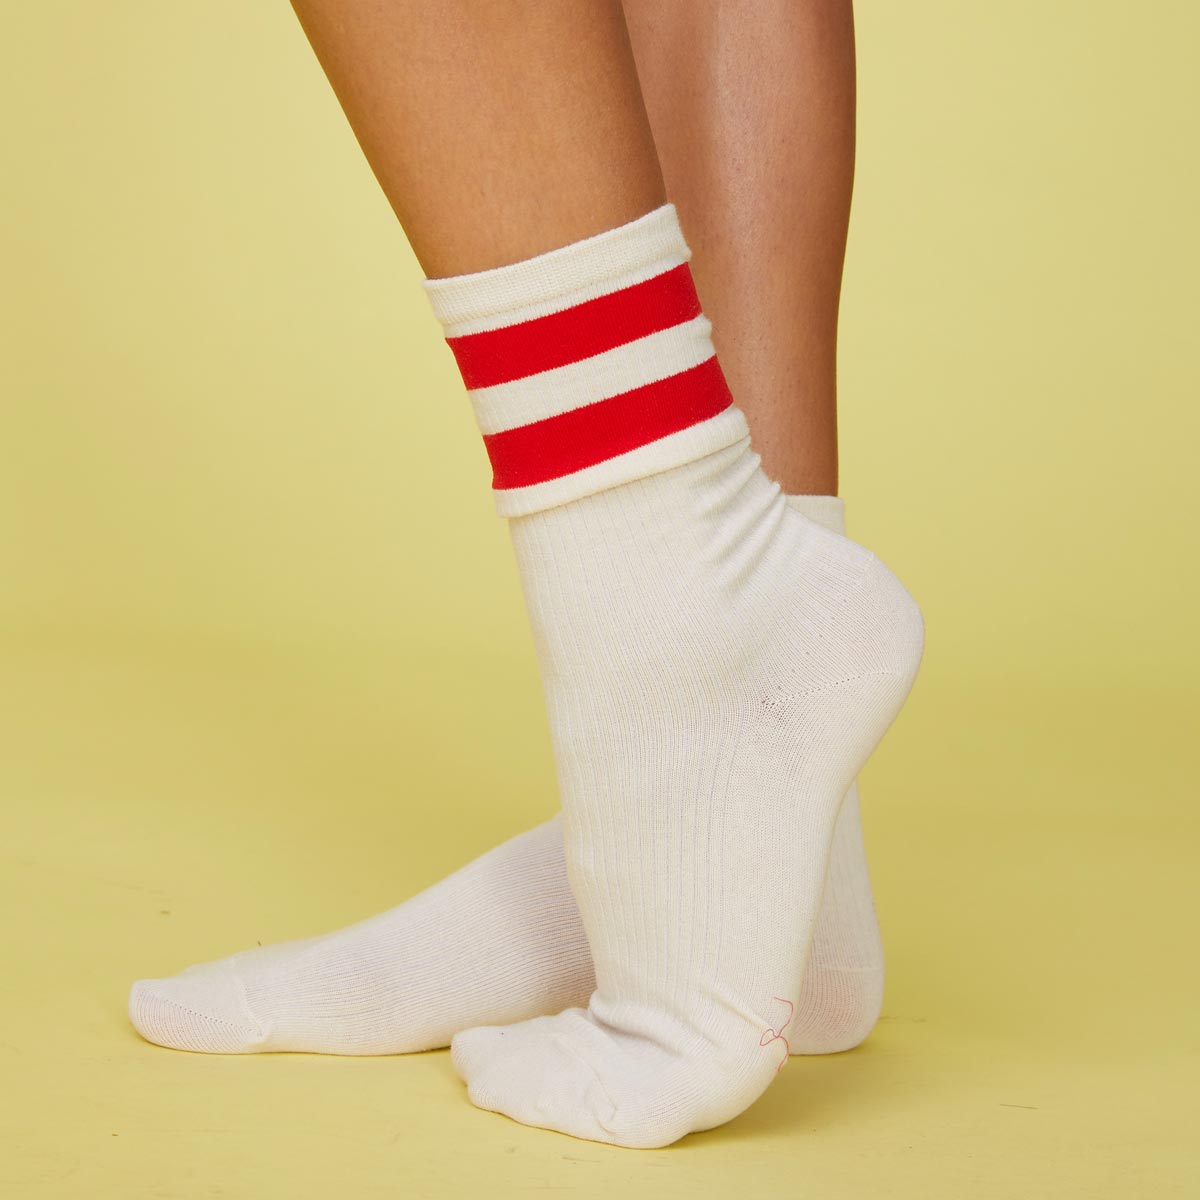 Side view of models feet wearing the stripe socks in blood red.